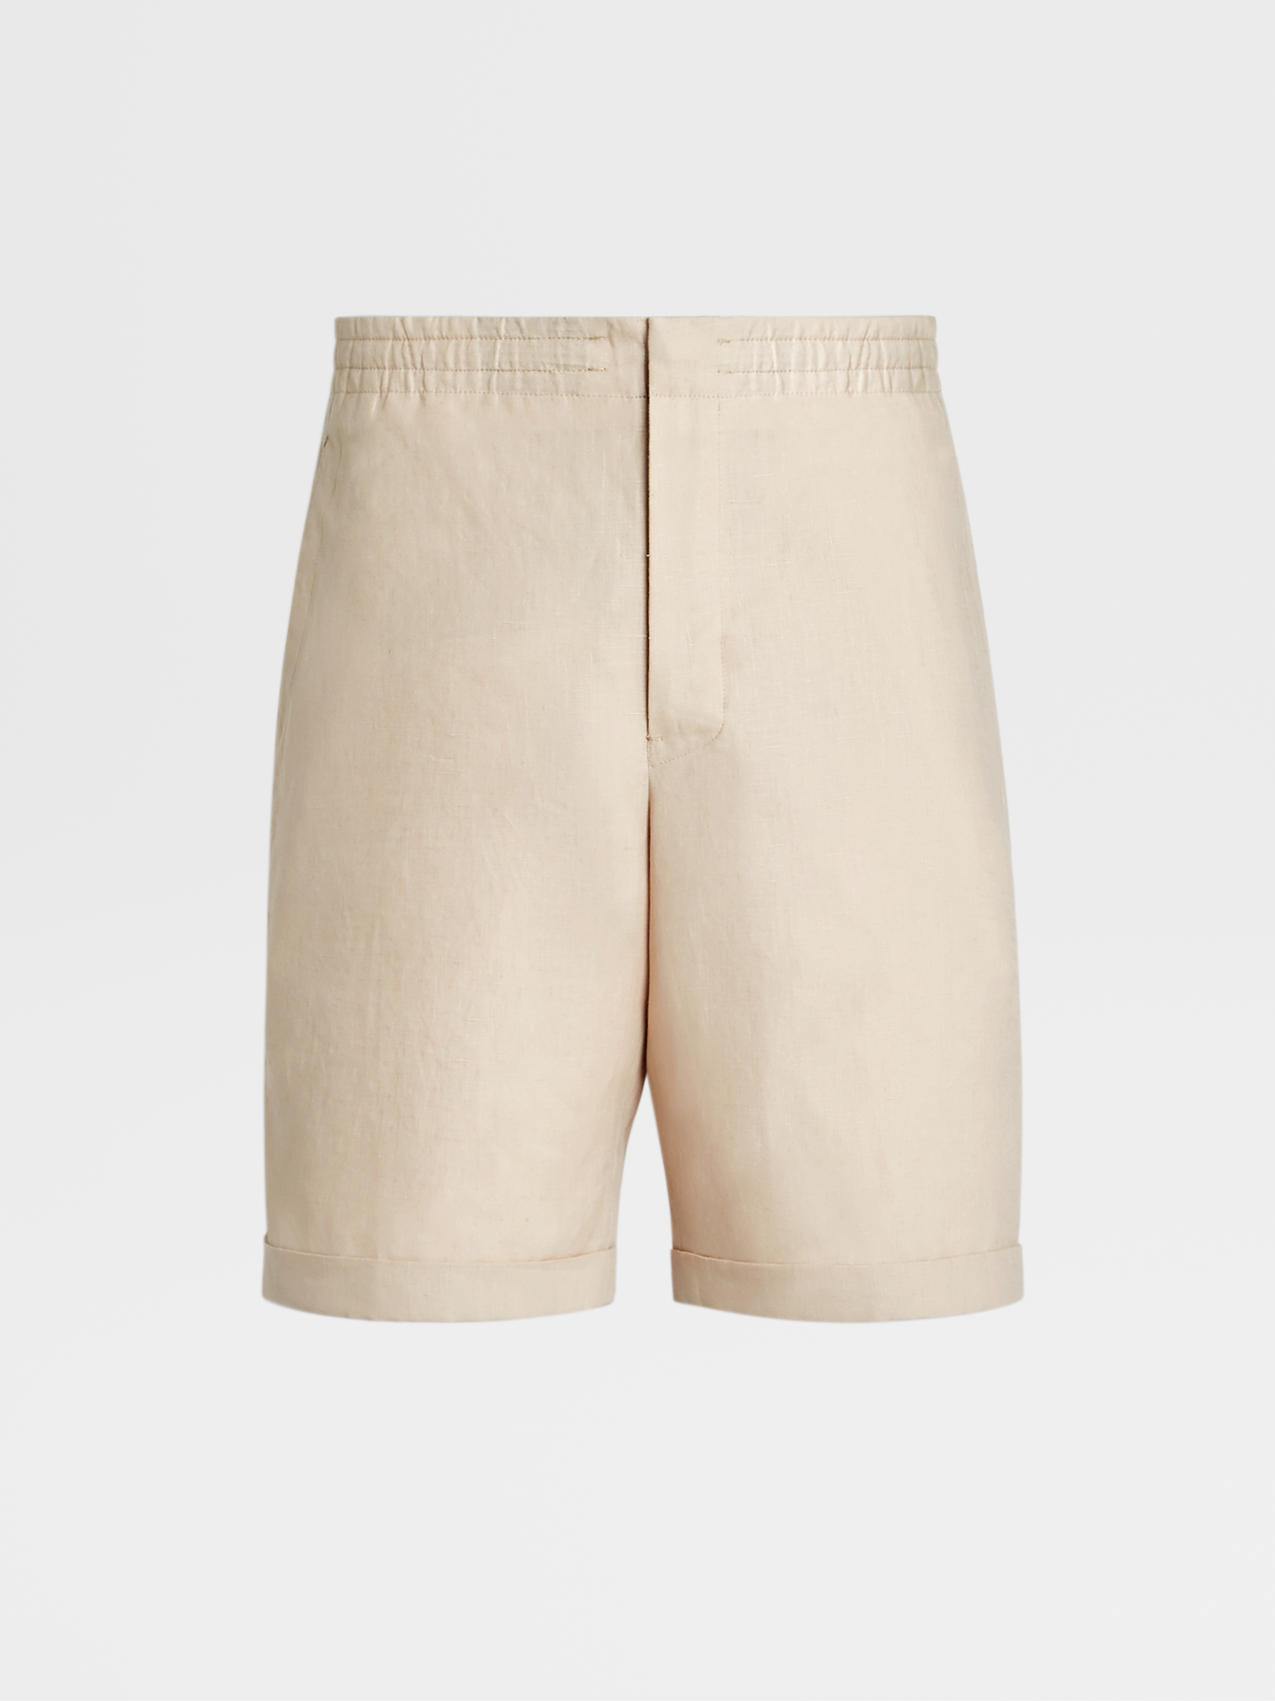 Off White Linen Shorts